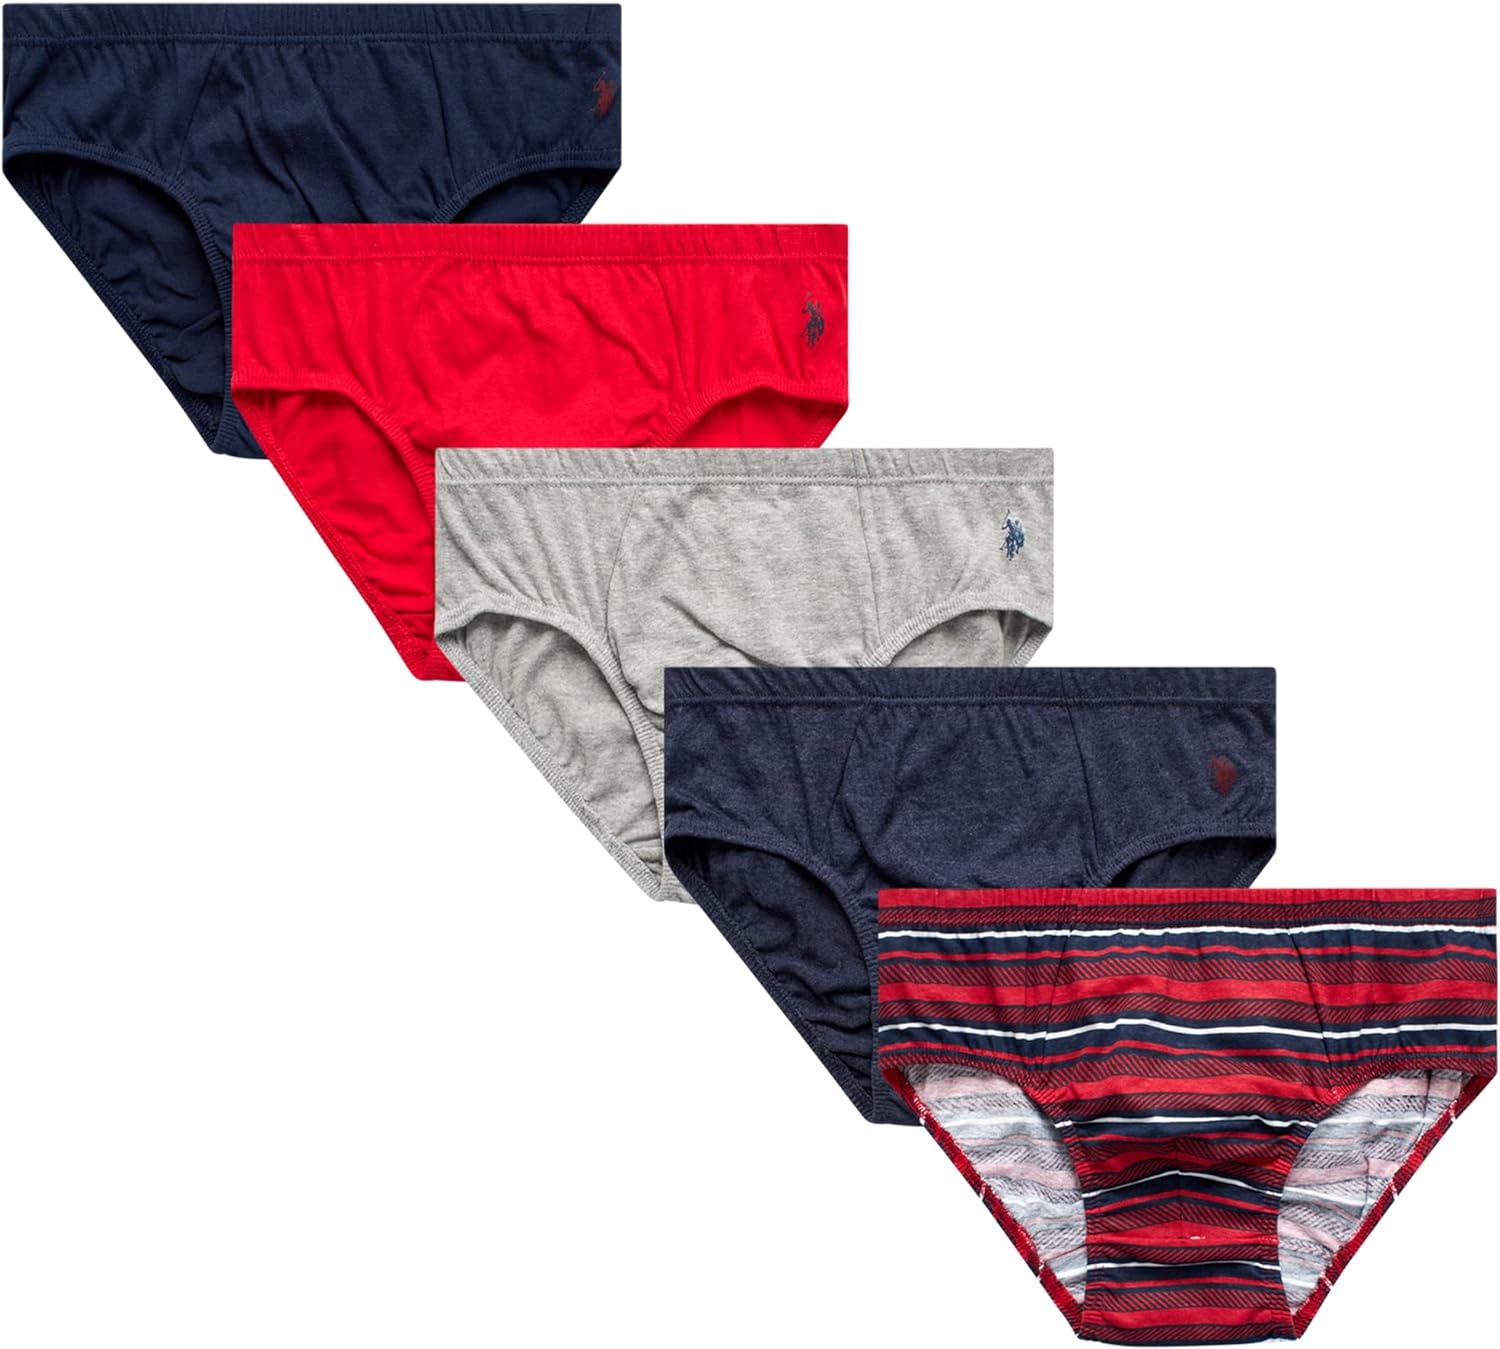 U.S. Polo Assn. Men's Underwear - Low Rise Briefs with Contour